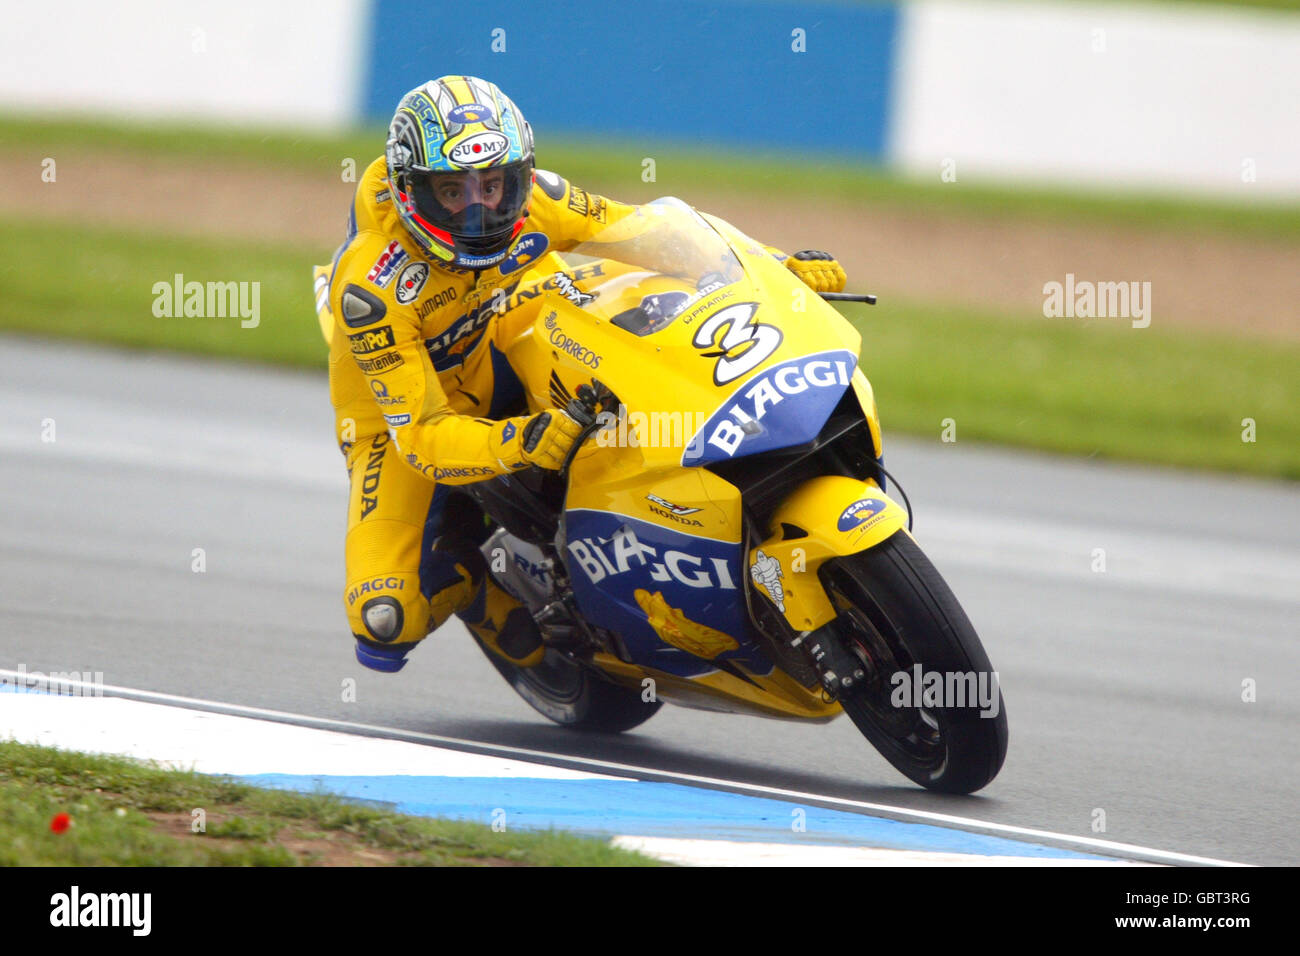 Motorradfahren - großer Preis von Großbritannien - Moto GP - Rennen. Max Biaggi in Aktion Stockfoto